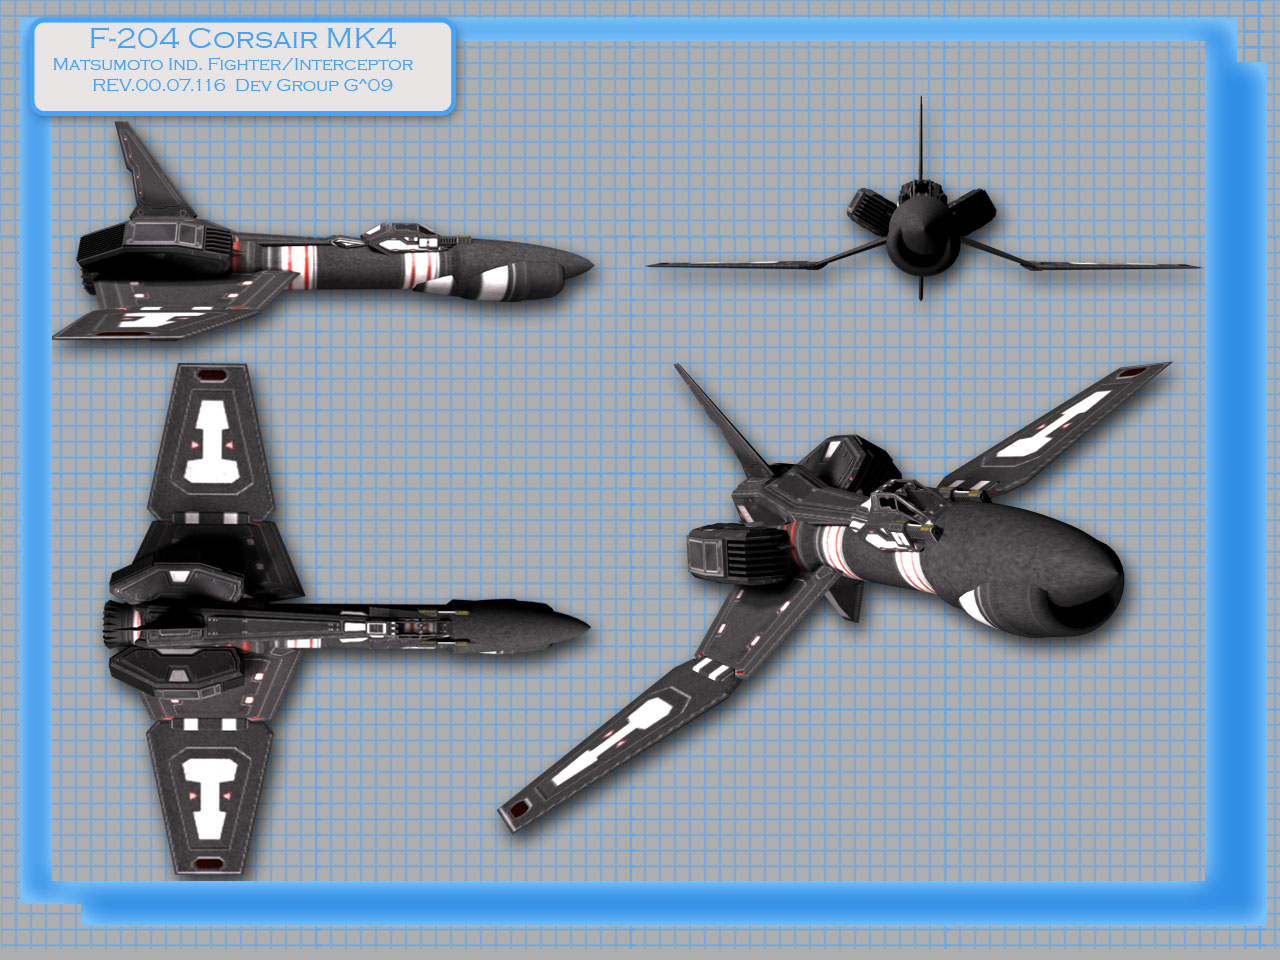 Corsair MK4